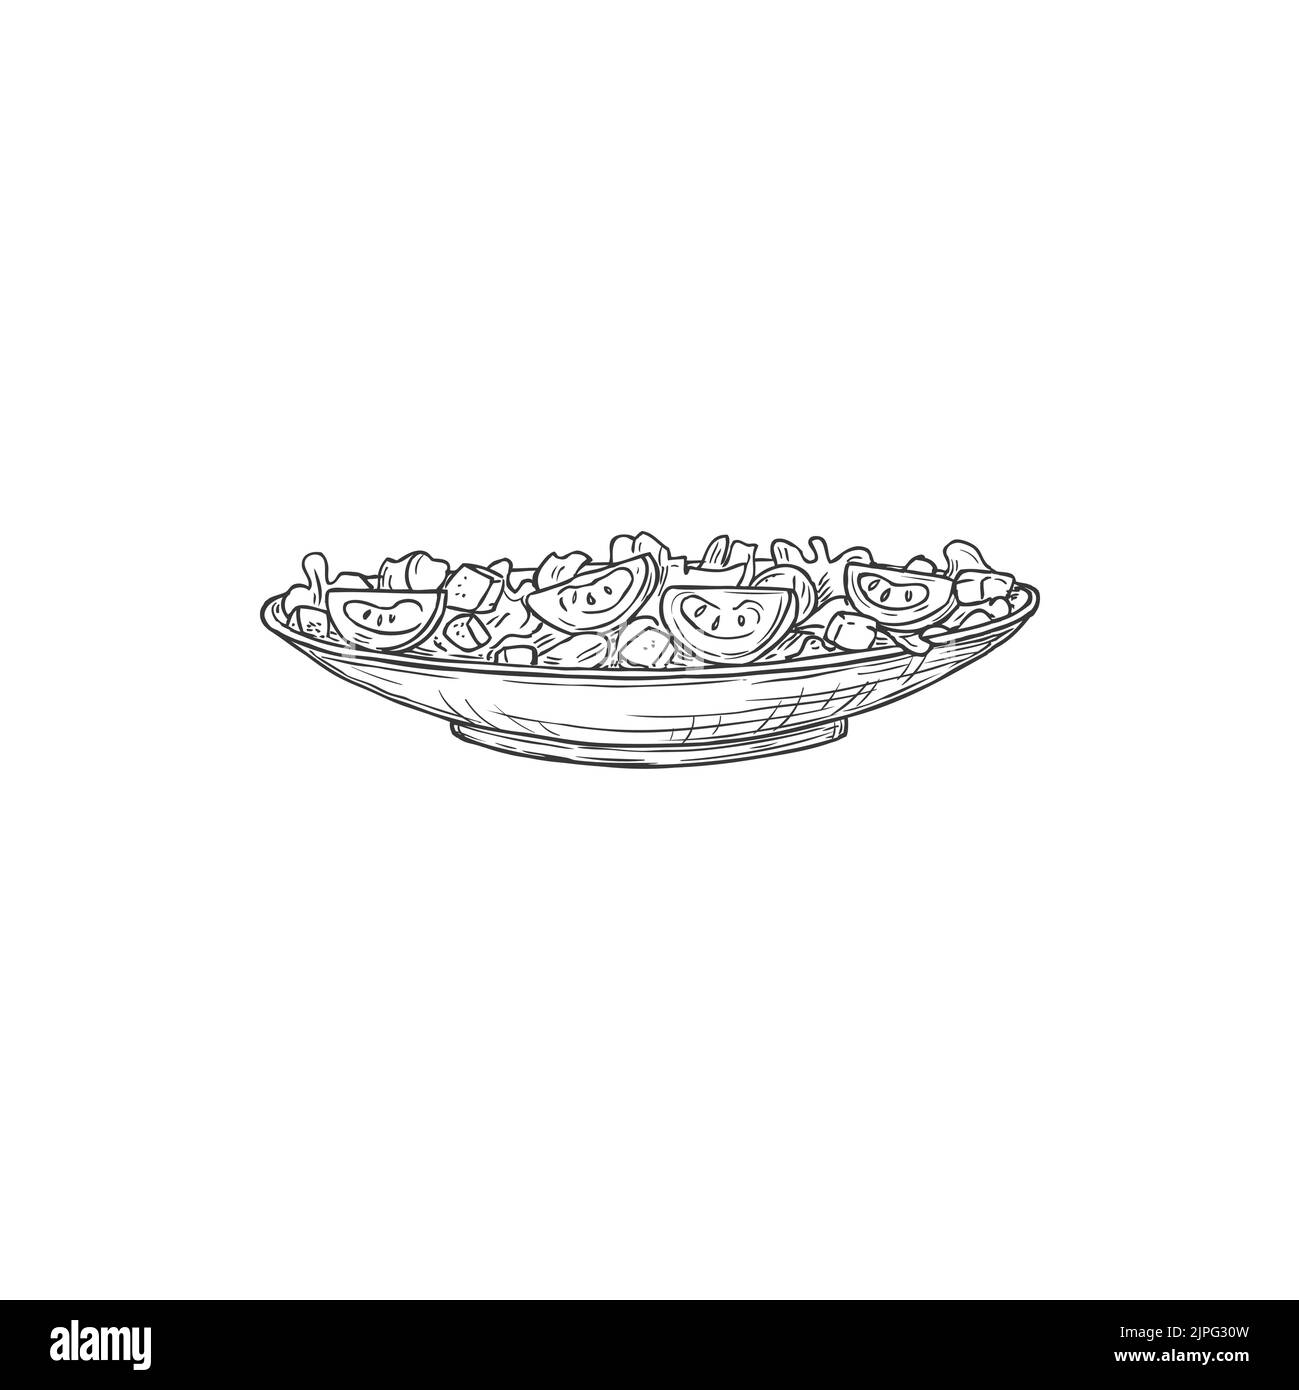 Teller mit Lebensmitteln, caesar Salat Snack isoliert monochromen Skizze Symbol. Vector Mischung aus Lebensmittelzutaten, europäische, asiatische, amerikanische Küche Gericht. Blätter und Mozzarella-Käse, vegetarisches Gericht, Essen in einer Schüssel Stock Vektor